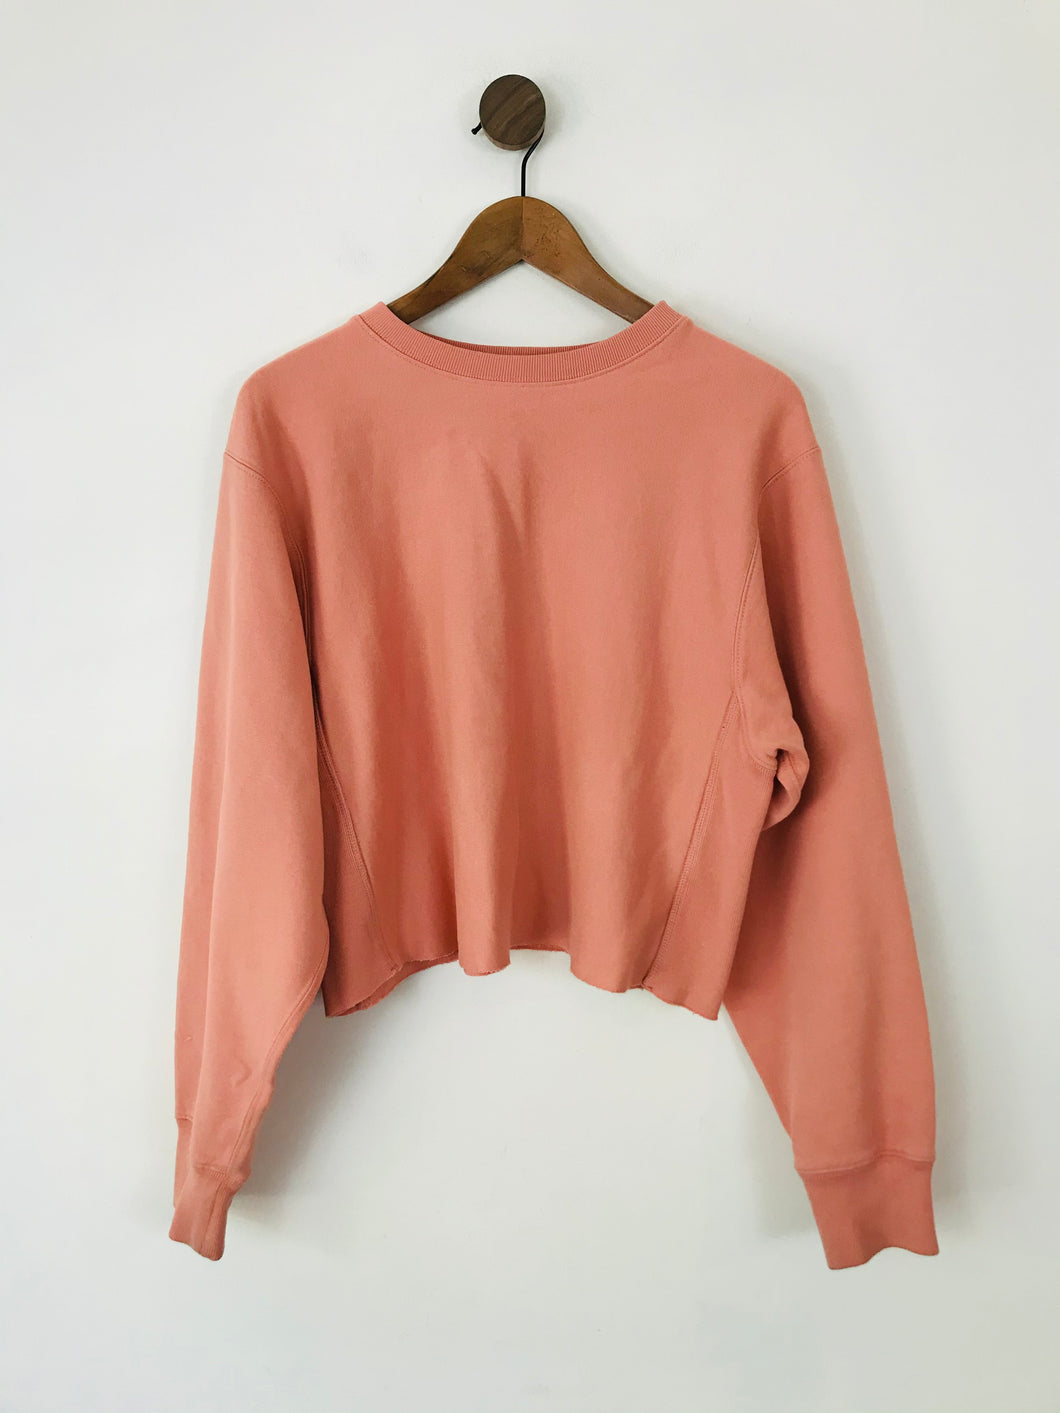 Allsaints Women's Crop Oversized Sweatshirt | M UK10-12 | Pink